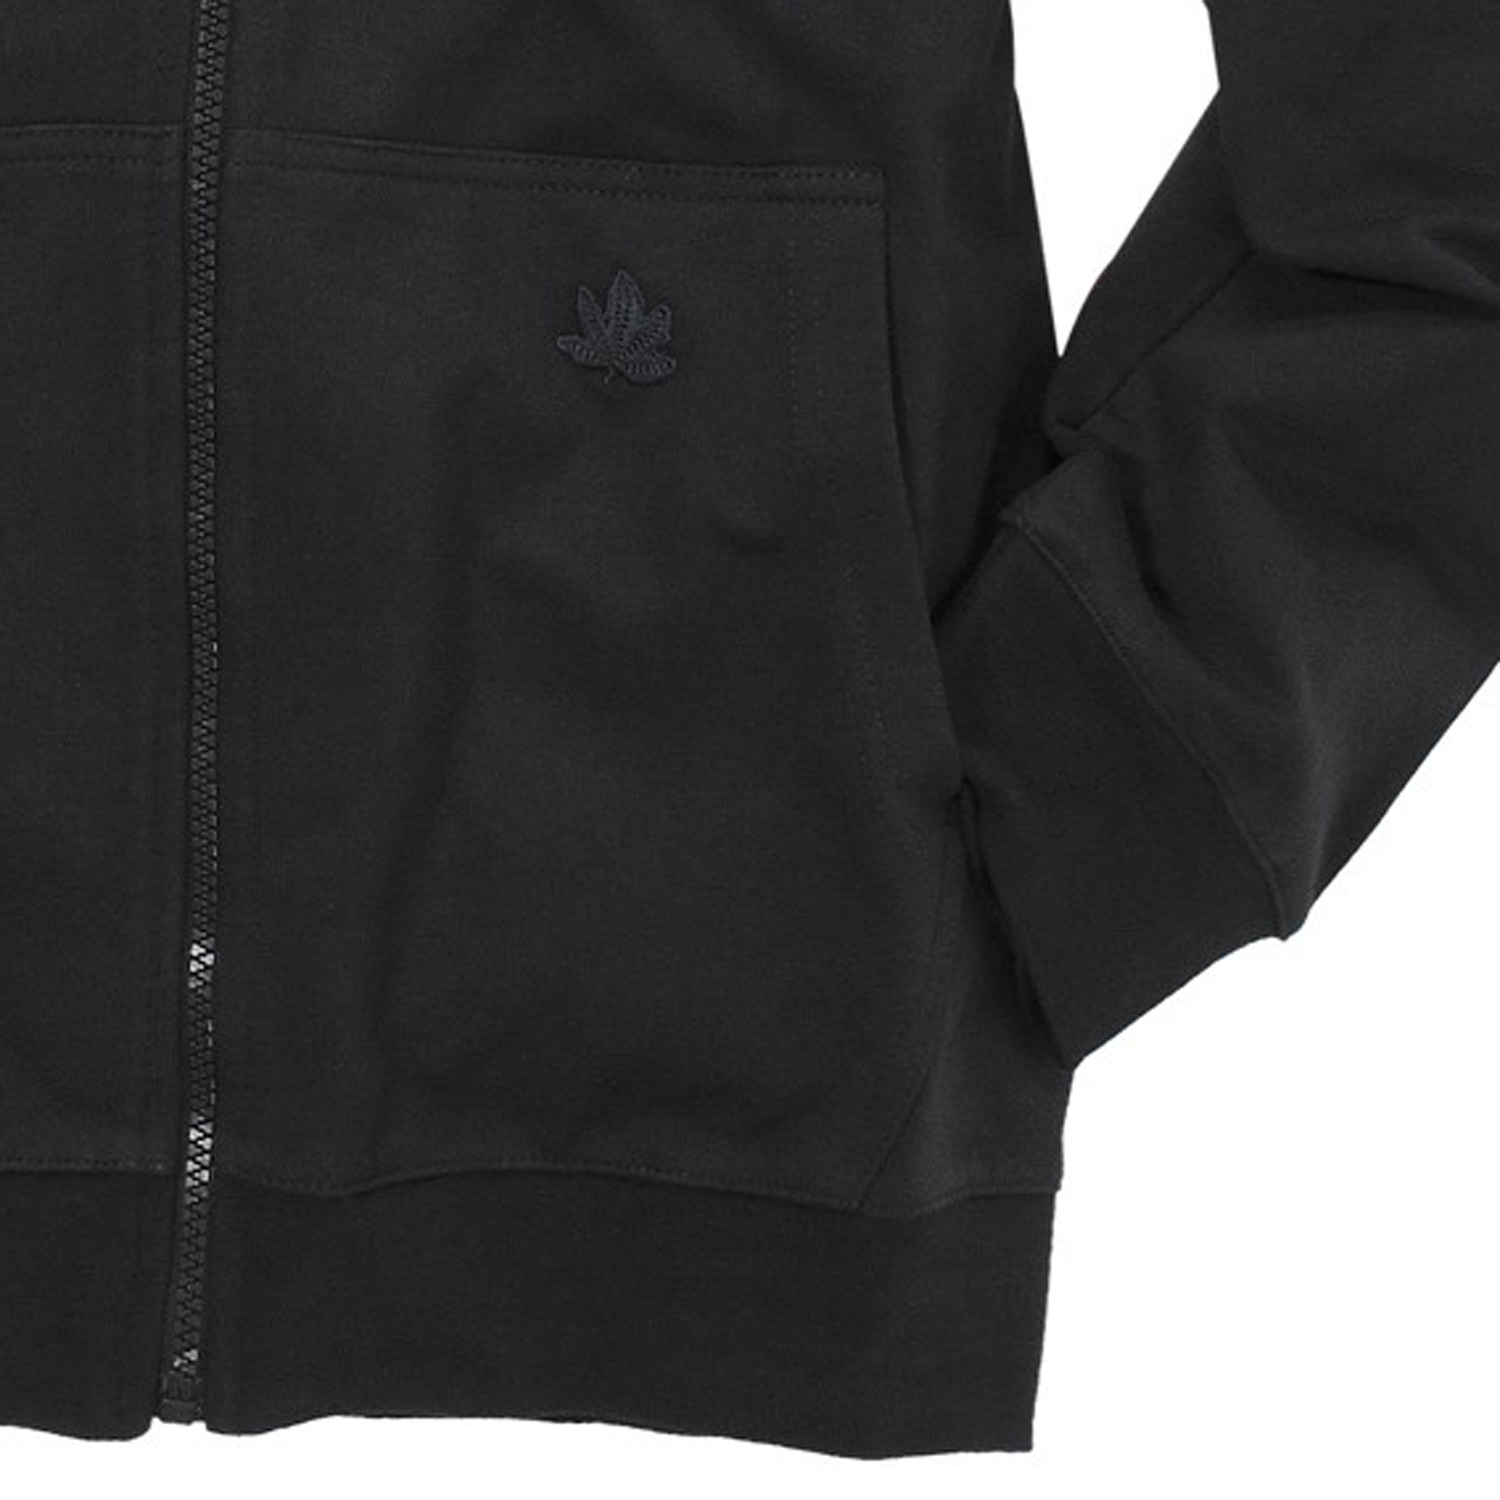 Schwarze Herren Kapuzen Sweat Jacke von Ahorn Sportswear in großen Größen bis 10XL